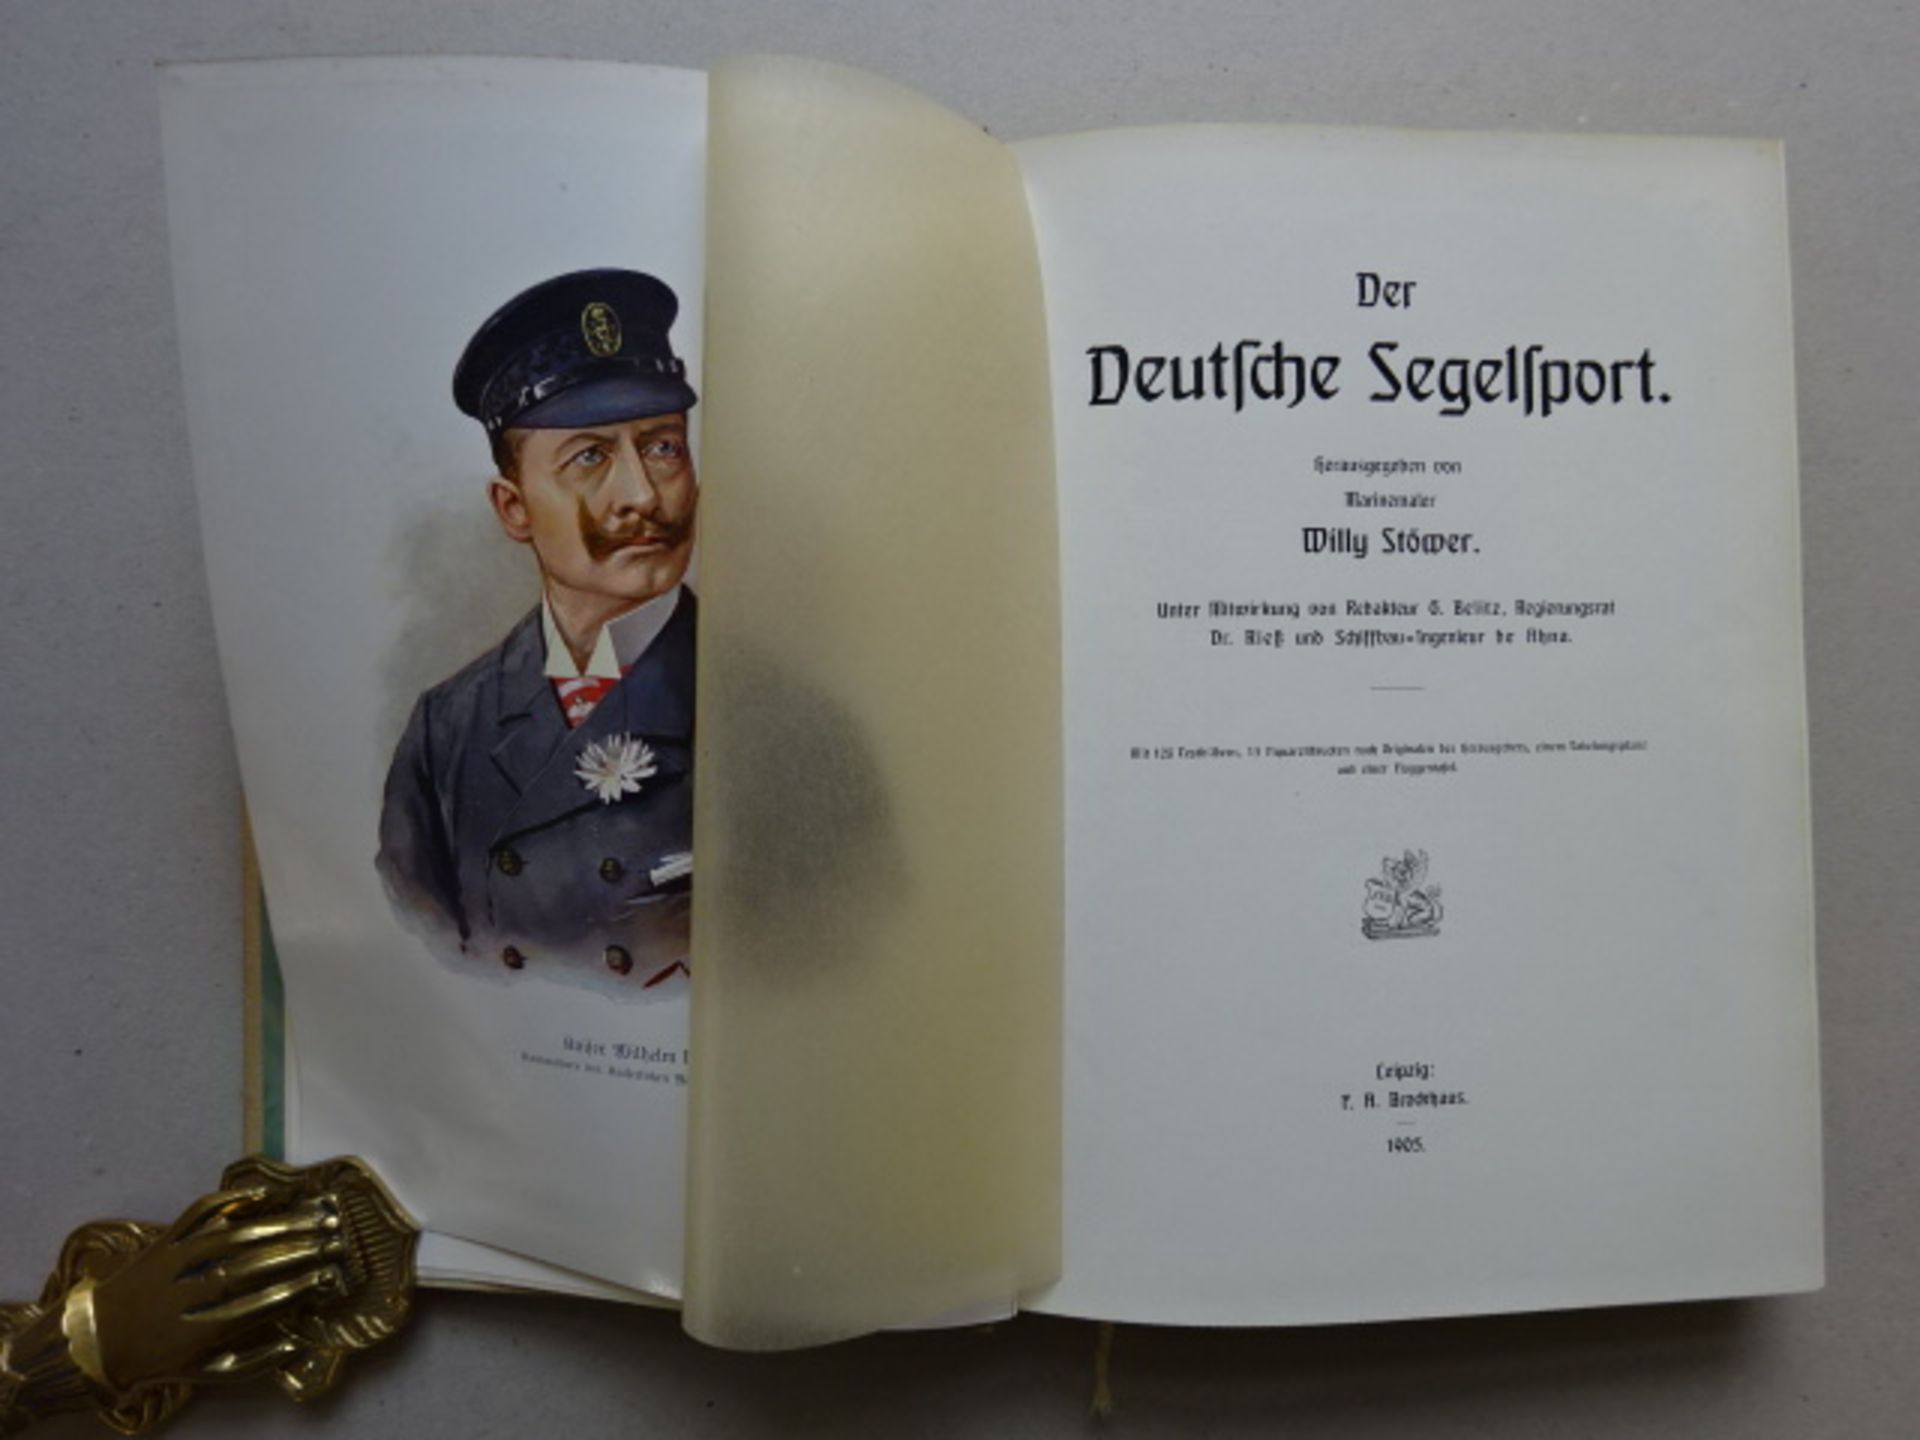 Stöwer - Deutsche Segelsport - Image 2 of 5